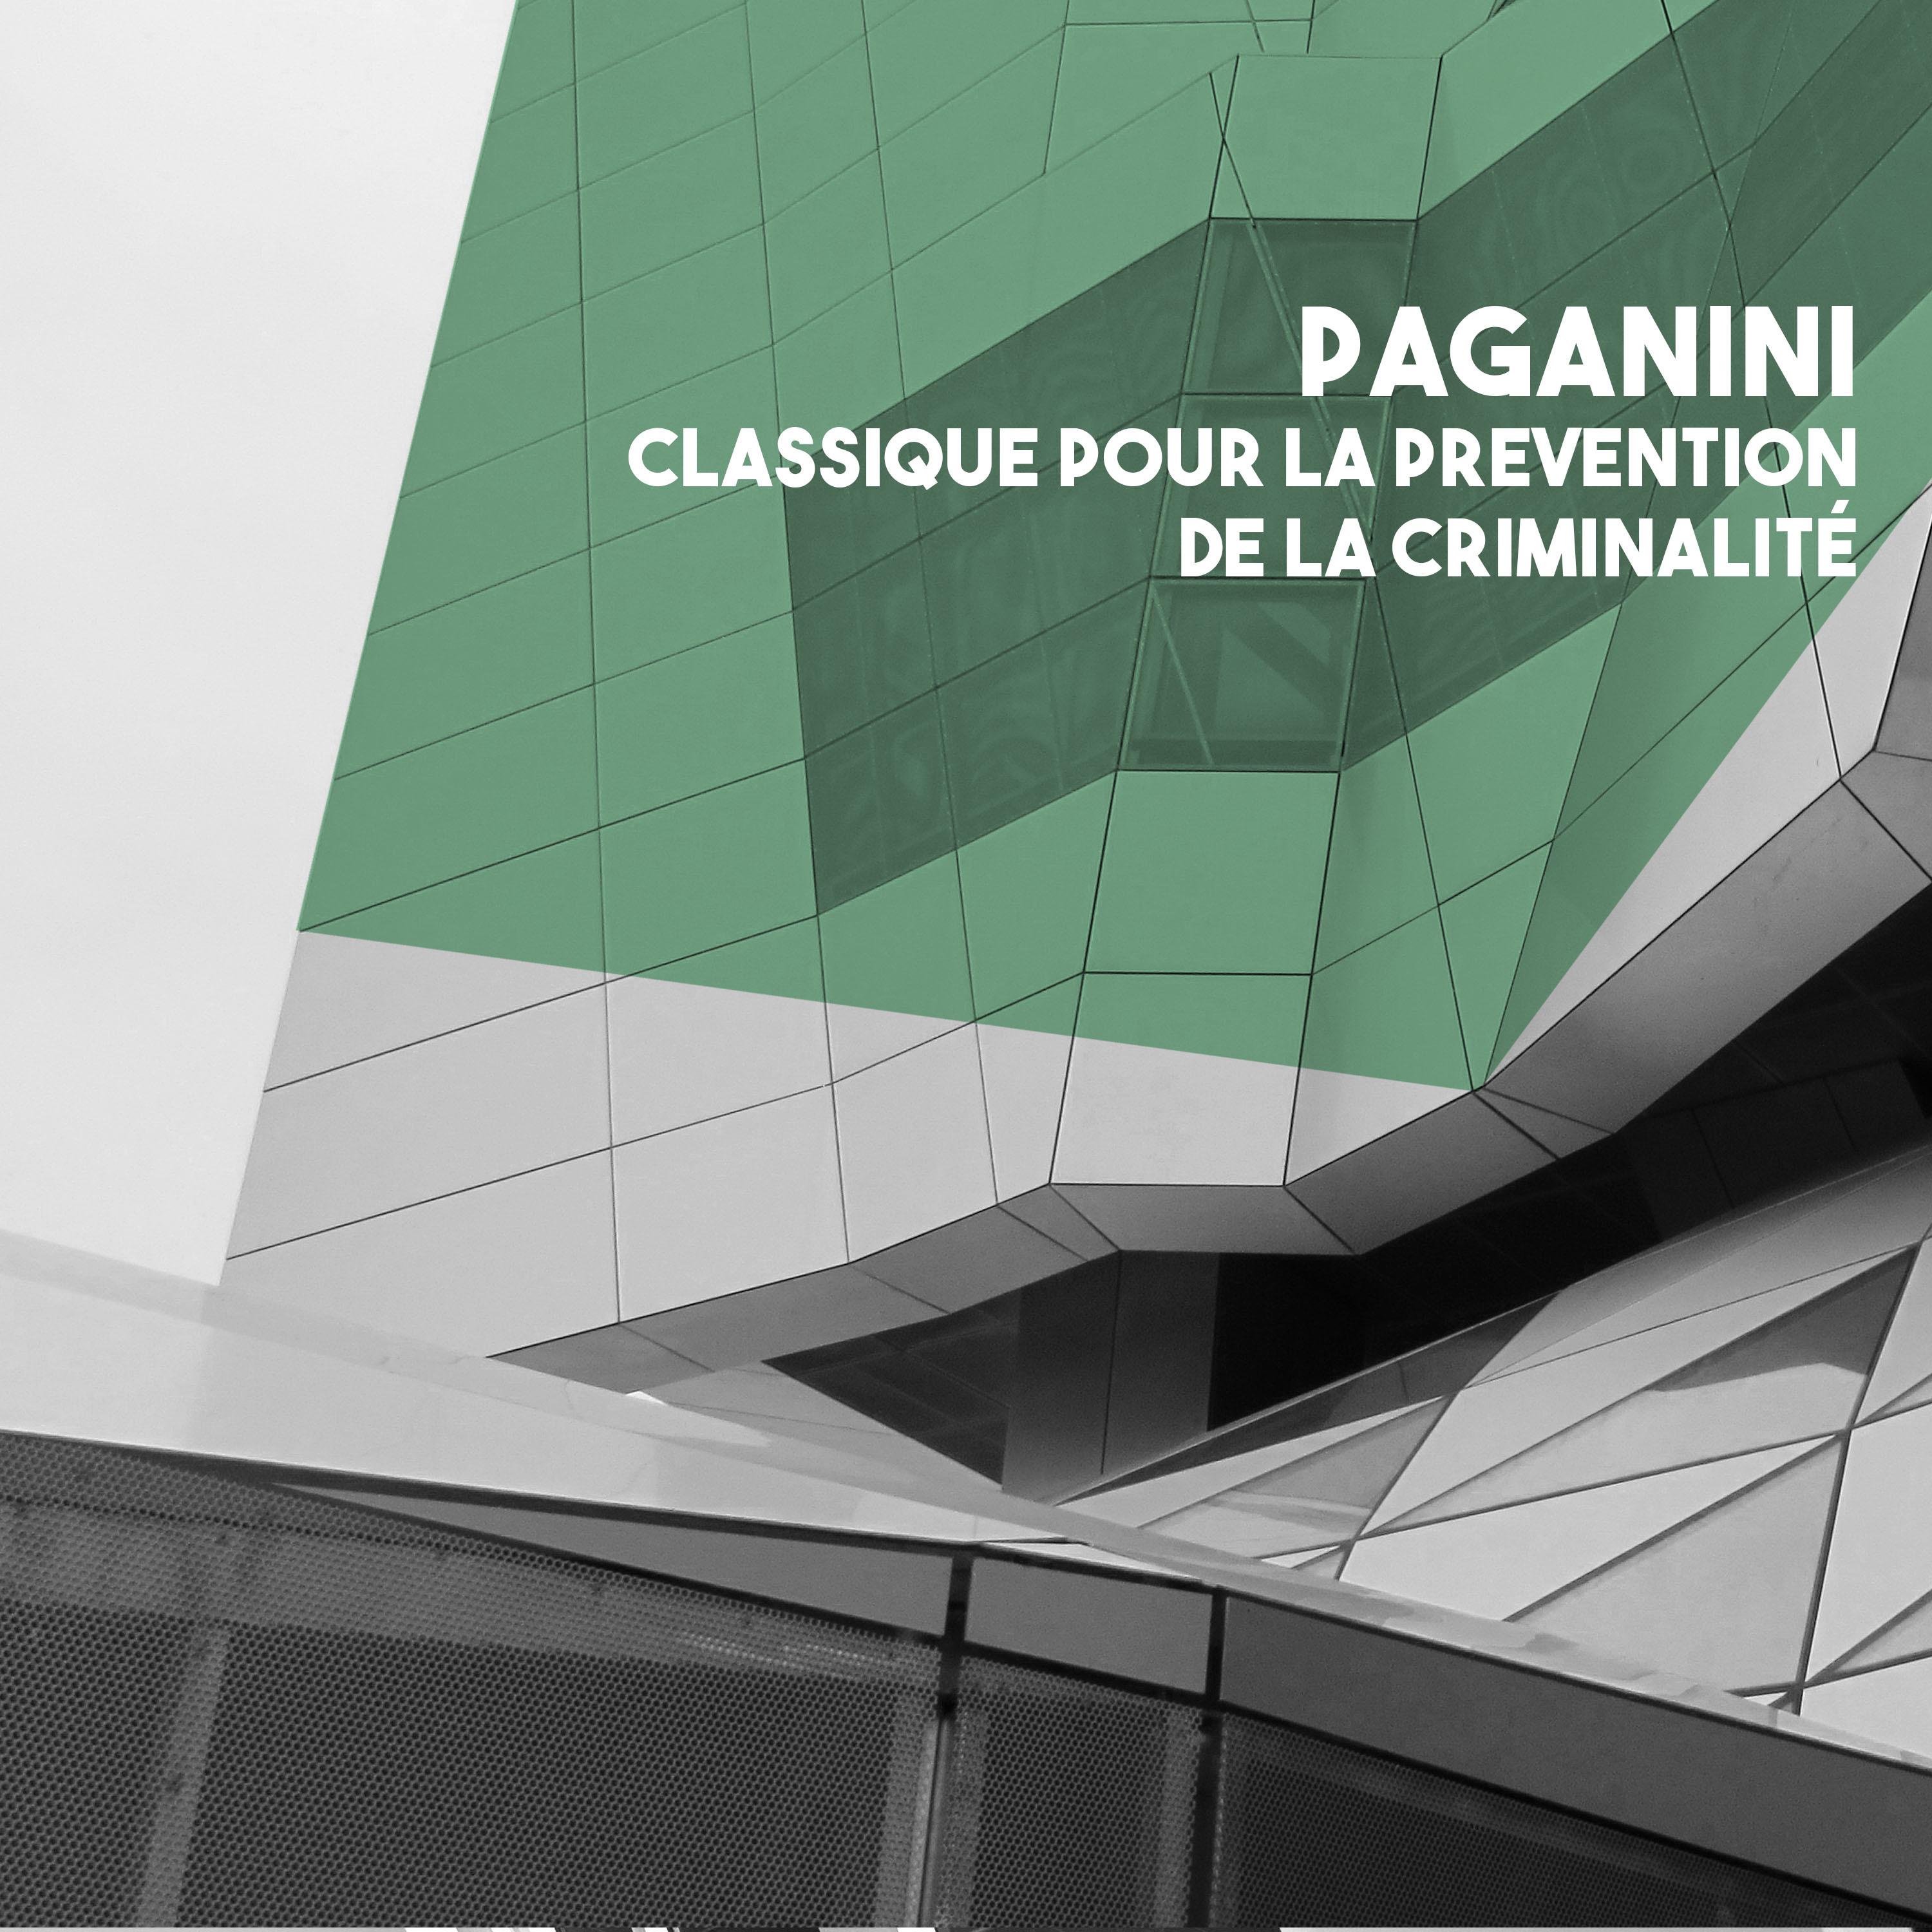 Paganini: Classique pour la prevention de la criminalite